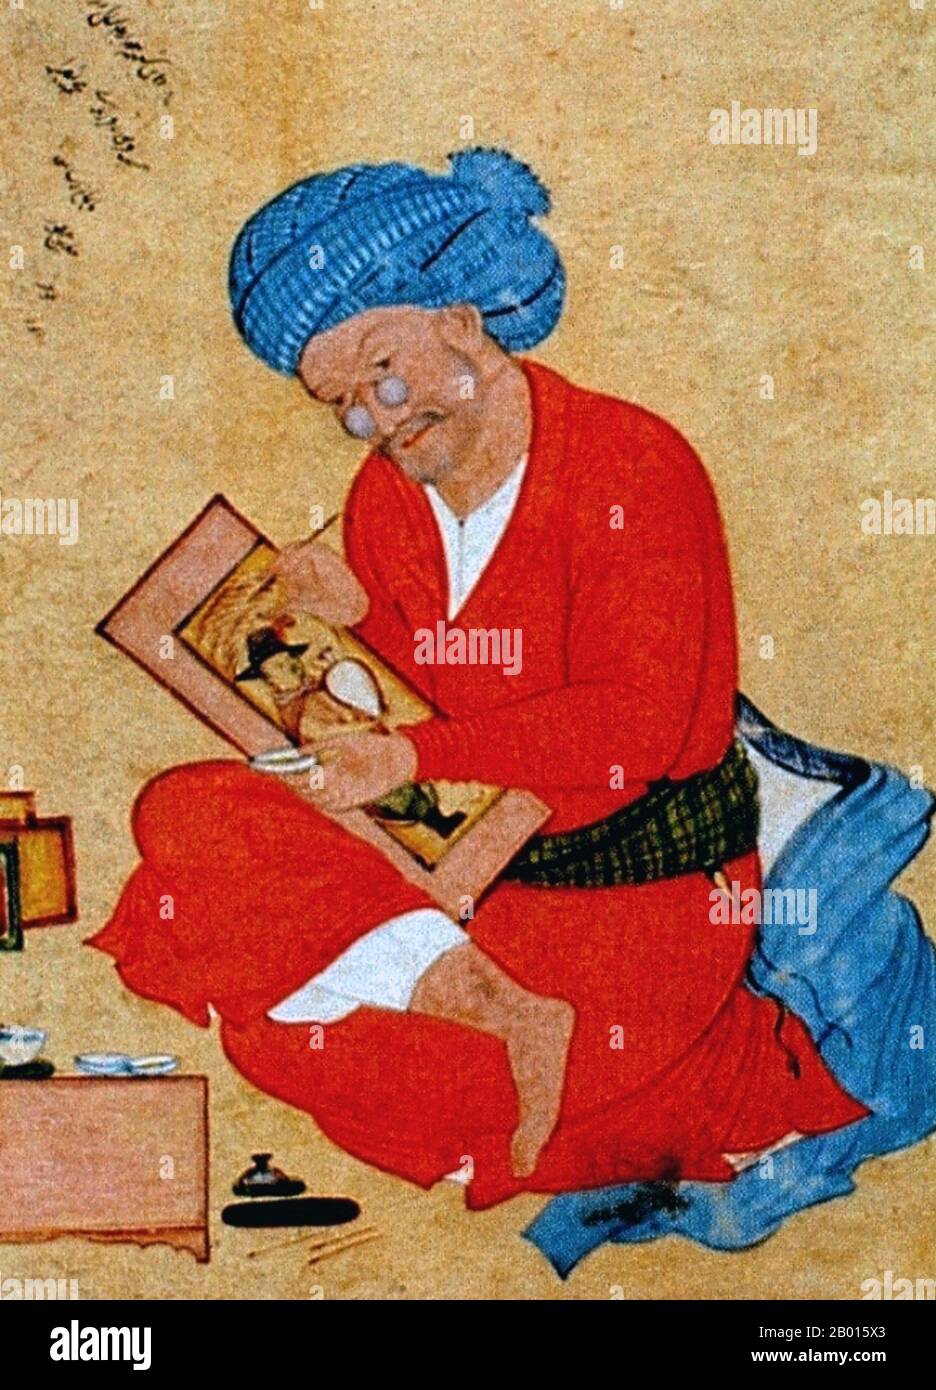 Iran: Porträt des persischen Miniaturisten Riza Abbasi (um 1565-1635) von seinem Schüler Mu'in, 1673. Riza Abbasi, Riza yi-Abbasi oder Reza-e Abbasi, auch AQA Riza oder Āqā Riżā Kāshānī (c. 1565–1635) war der führende persische Miniaturist der Isfahan-Schule während der späteren Safavid-Zeit und verbrachte den Großteil seiner Karriere bei Shah Abbas I. (r.1587-1629). Er gilt als der letzte große Meister der persischen Miniatur, am besten bekannt für seine einzelnen Miniaturen für muraqqa oder Alben, vor allem Einzelfiguren schöner Jünglinge. Stockfoto